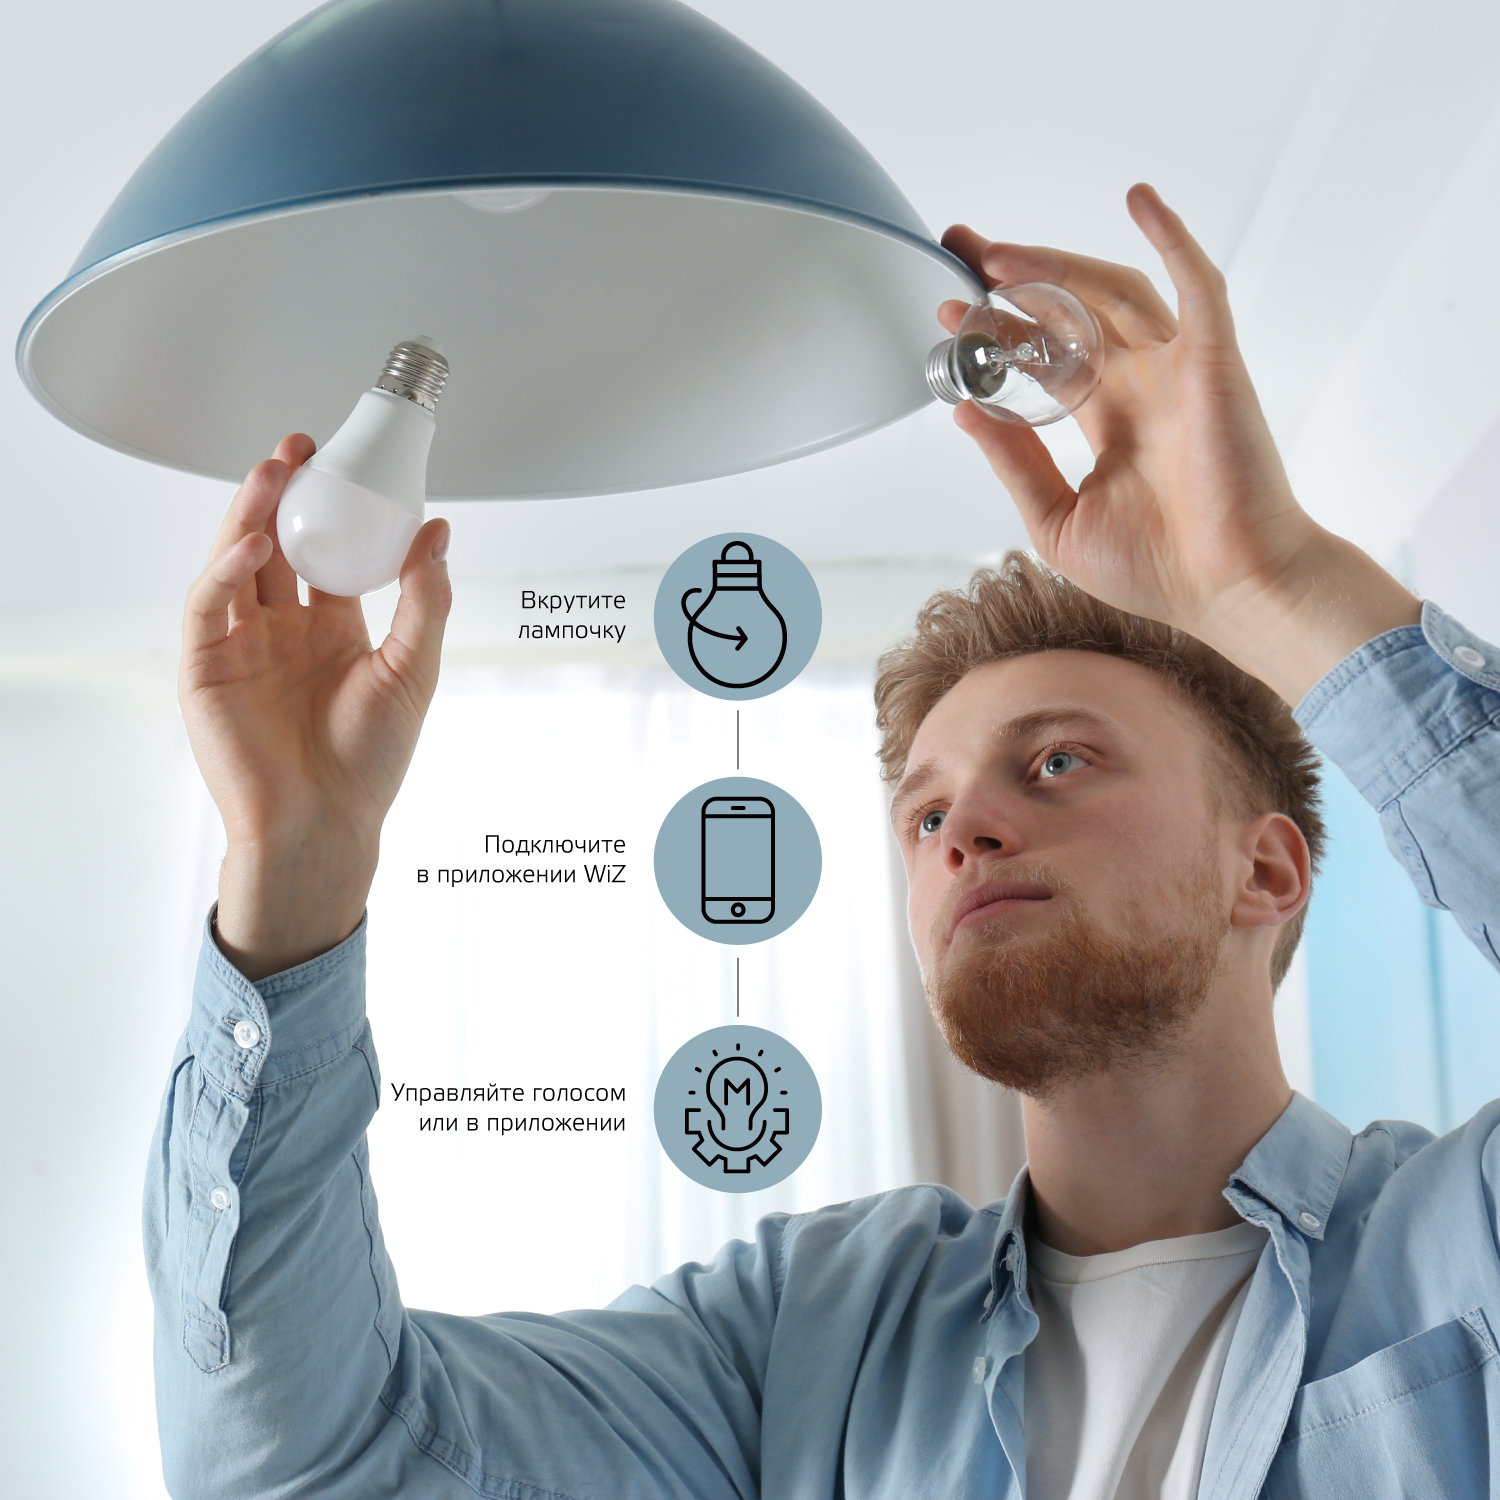 Лампа светодиодная умная LED 8.5 Вт 806 Лм 2700-6500К E27 A60 RGBW +изм.цвет.темп.+диммирование управление по Wi-Fi Smart Home Gauss (1170112)